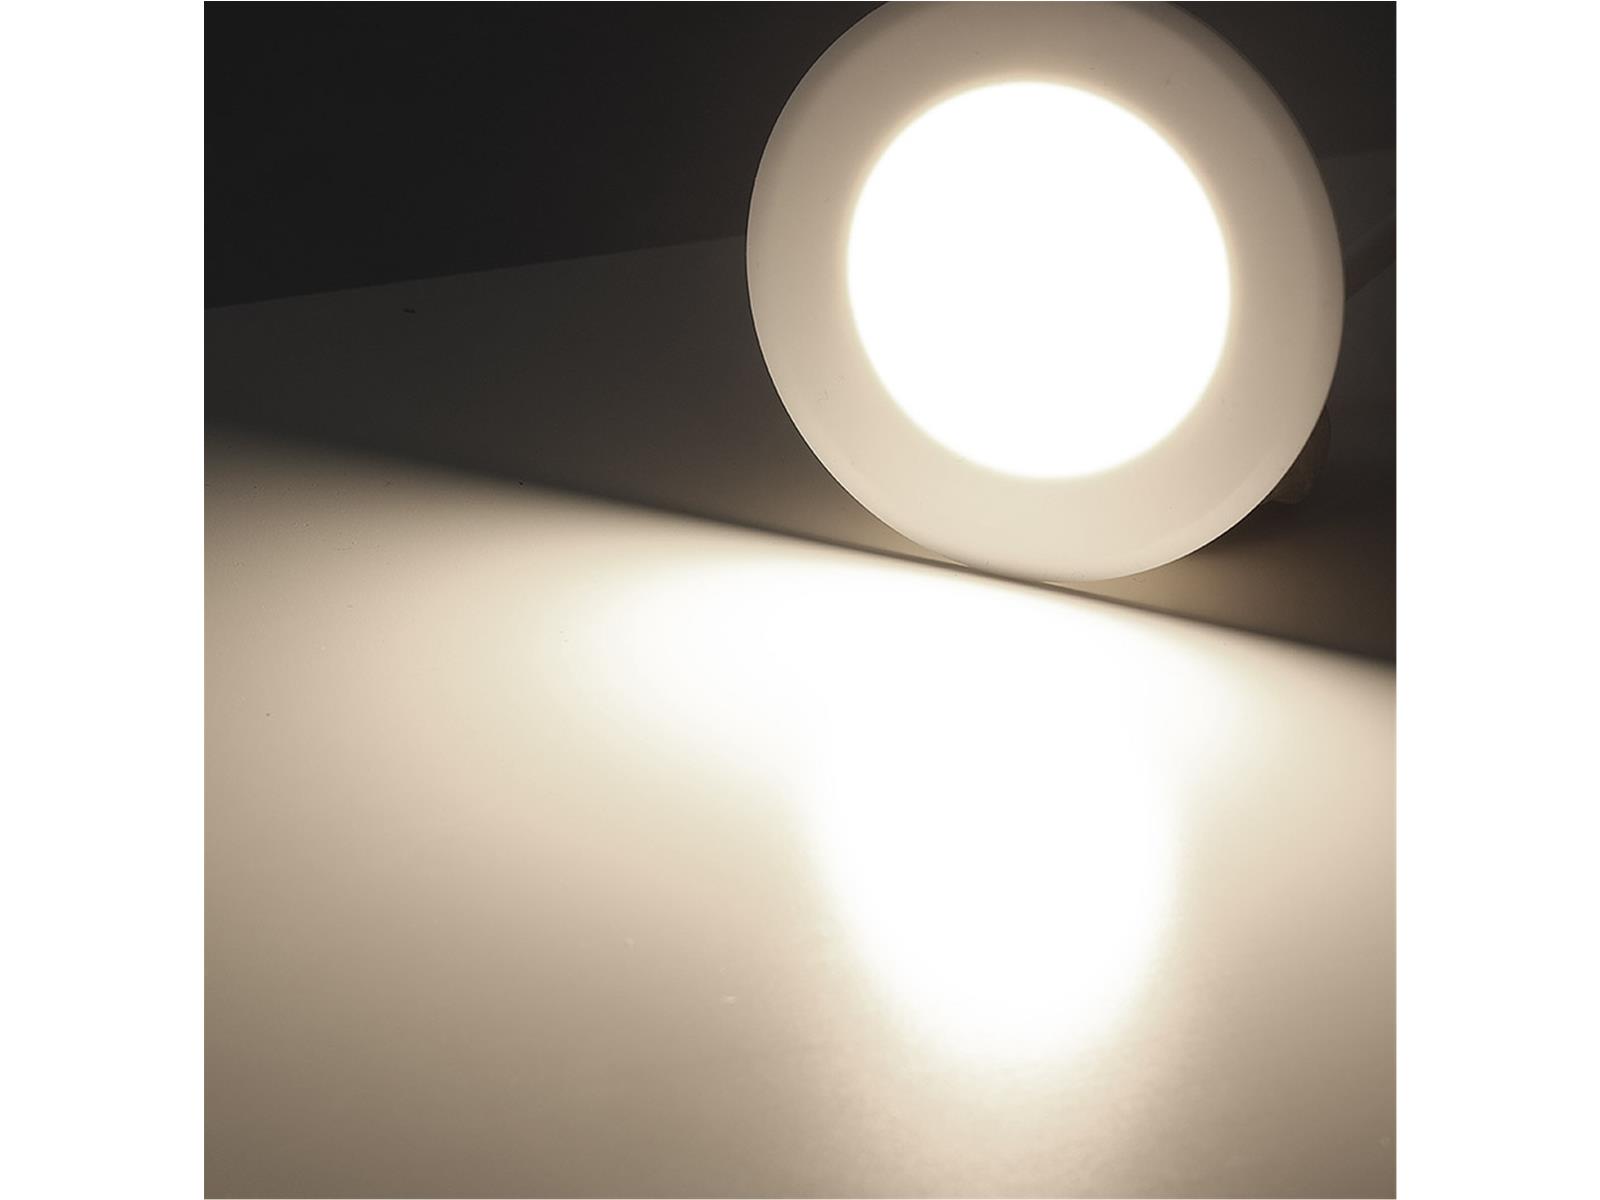 LED-Einbauleuchte "EBL-HV65w", weiß2 Watt, 230V, 4200K, 237Lm, neutralweiß